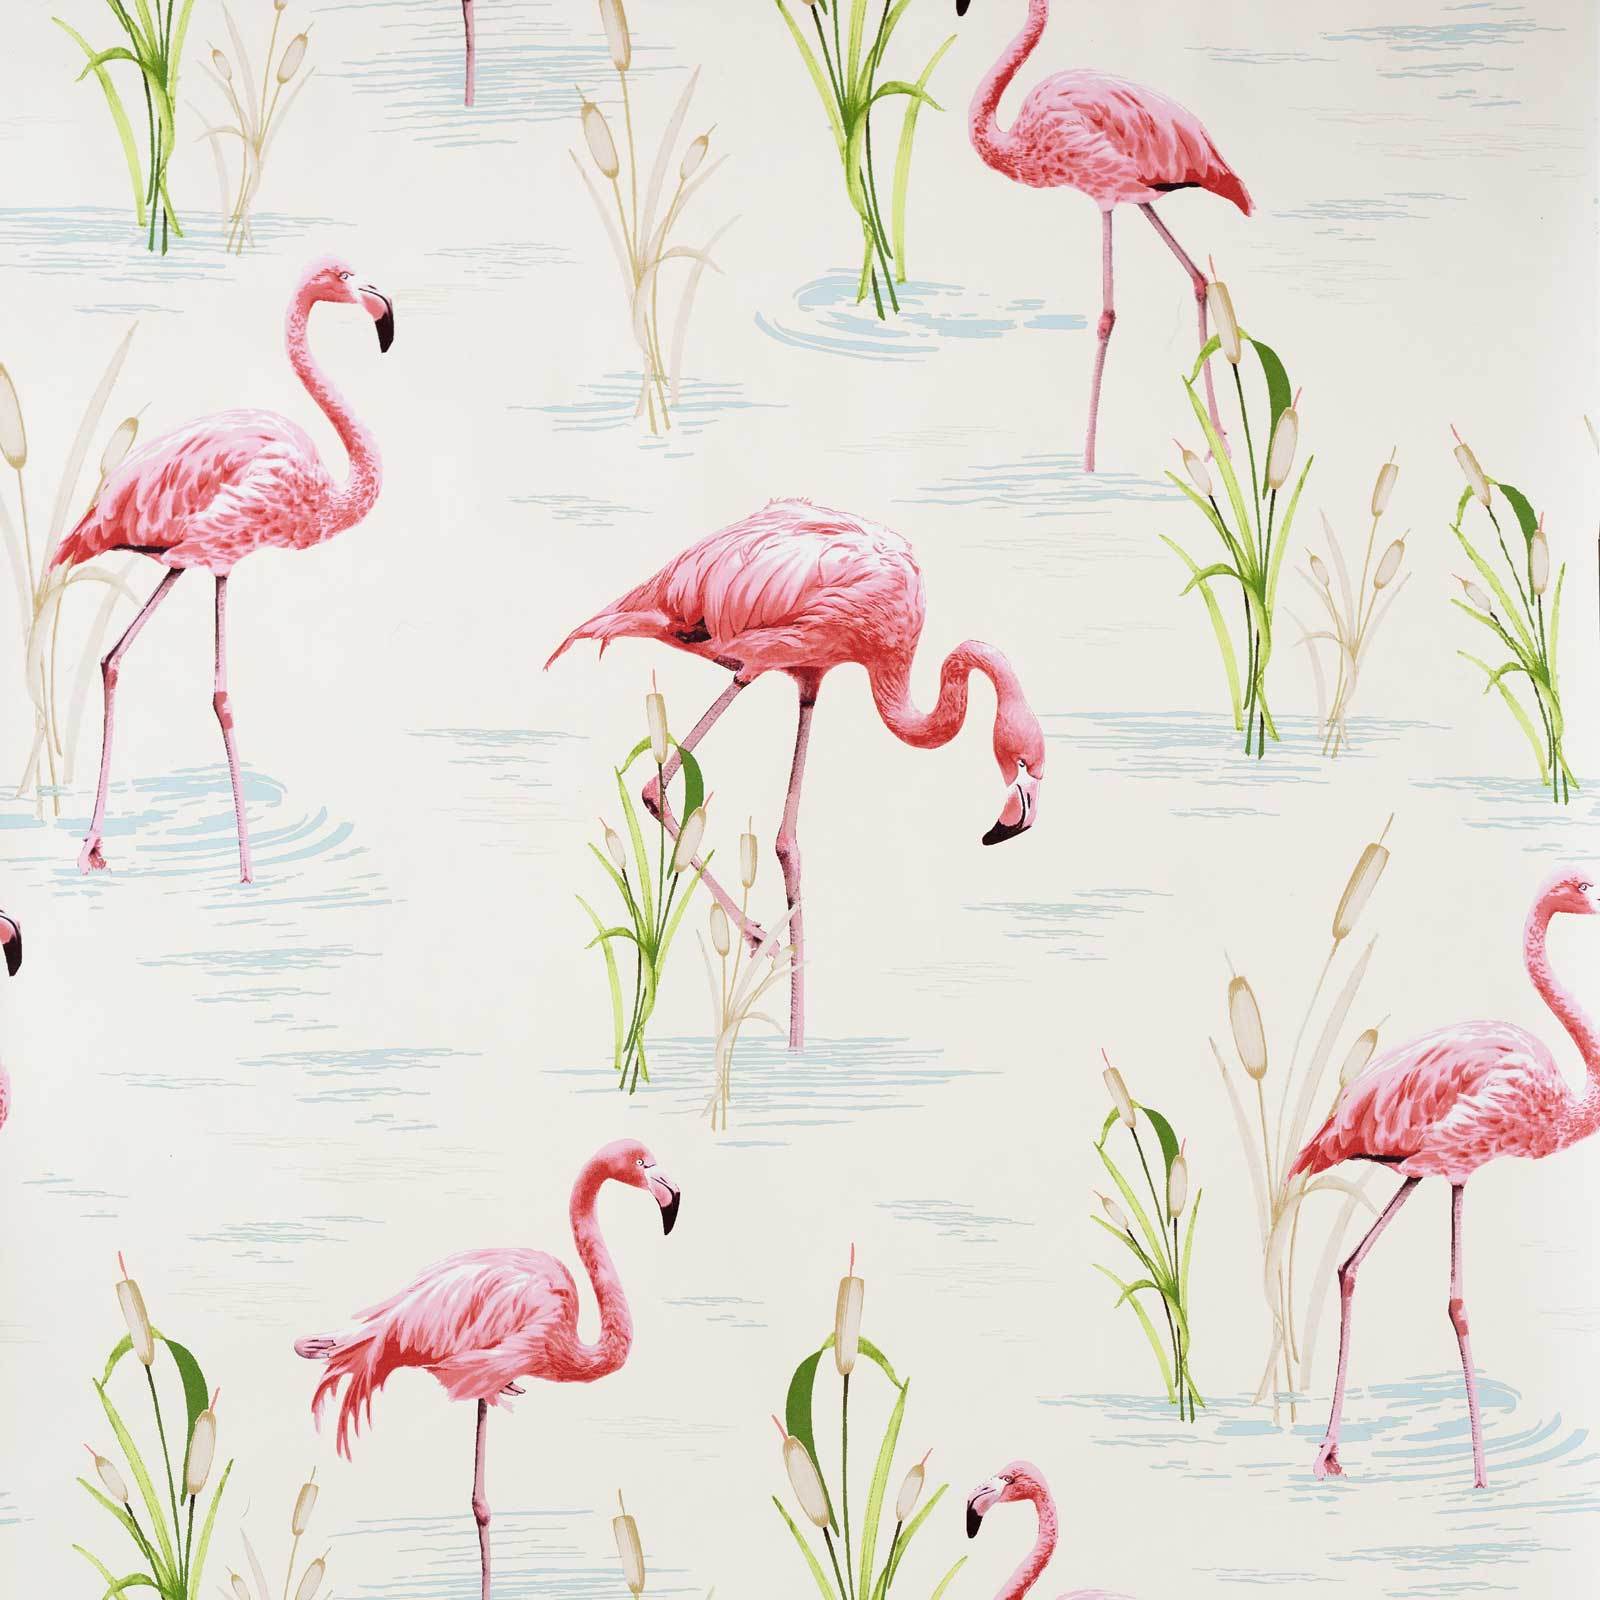 Flamingo Fan Art Wallpaper